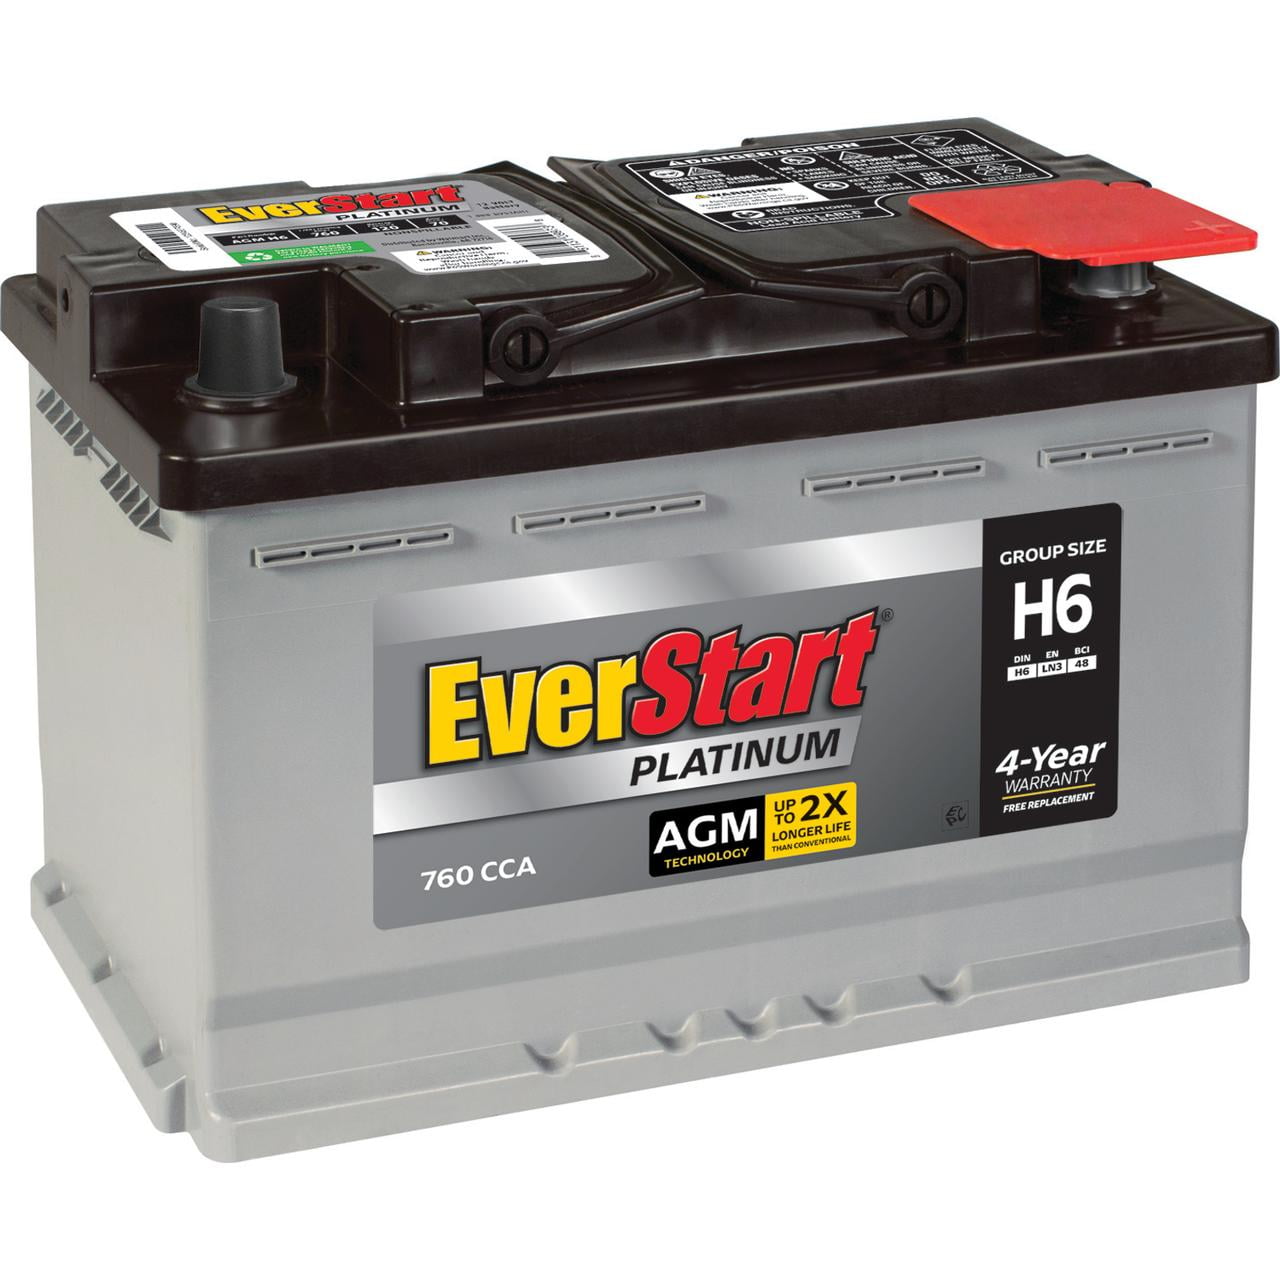 EverStart Platinum AGM Battery, Group H6 (12Volt/ 760CCA)